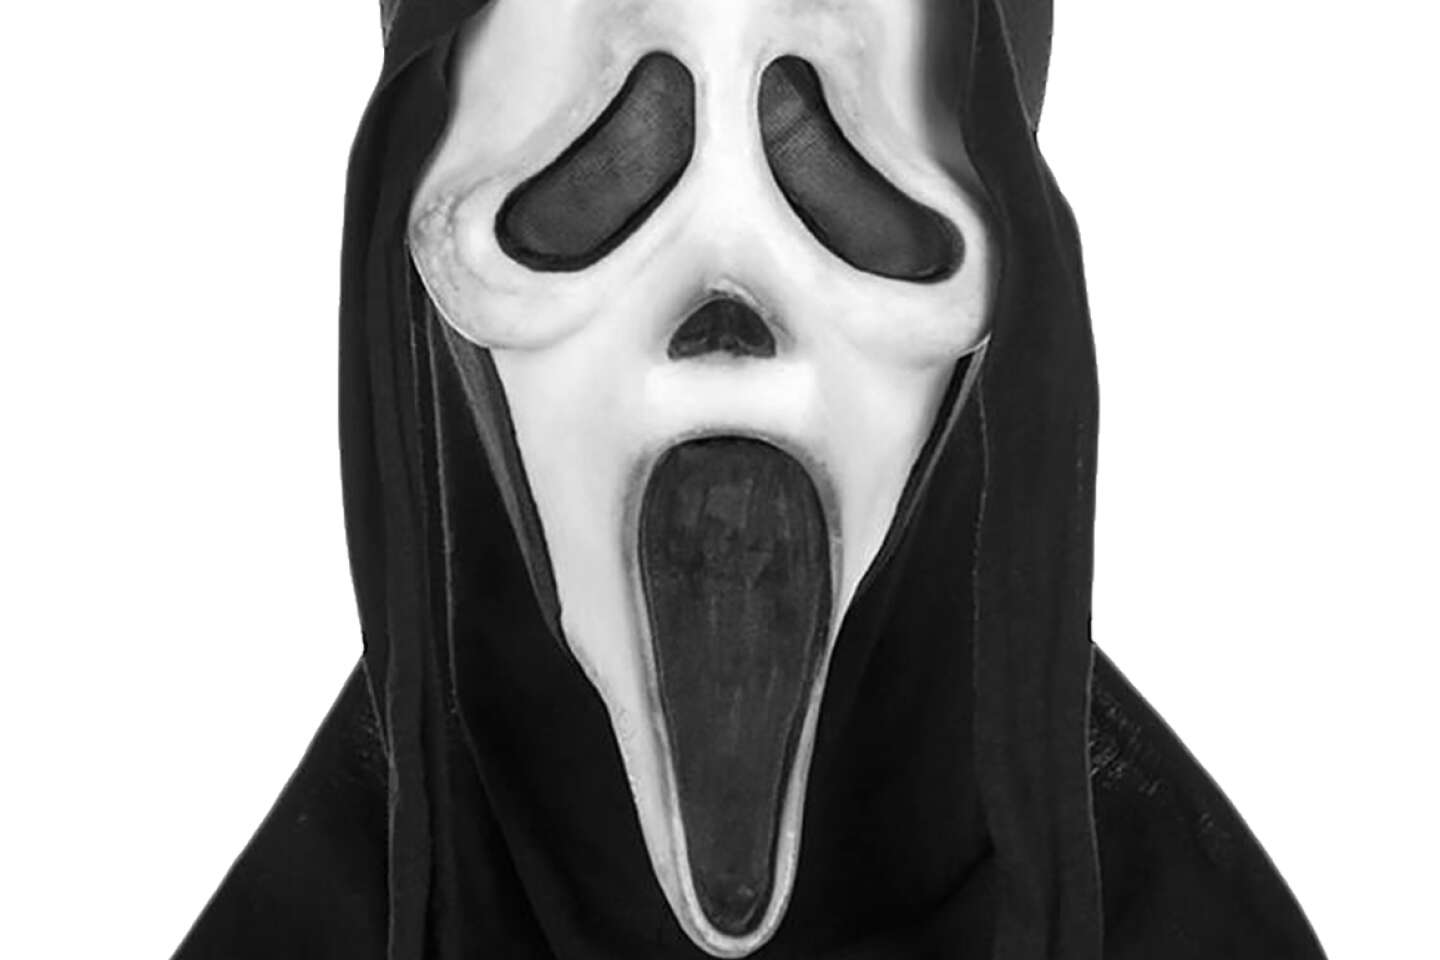 Poster for Sale avec l'œuvre « Scream Covid masque drôle de film d